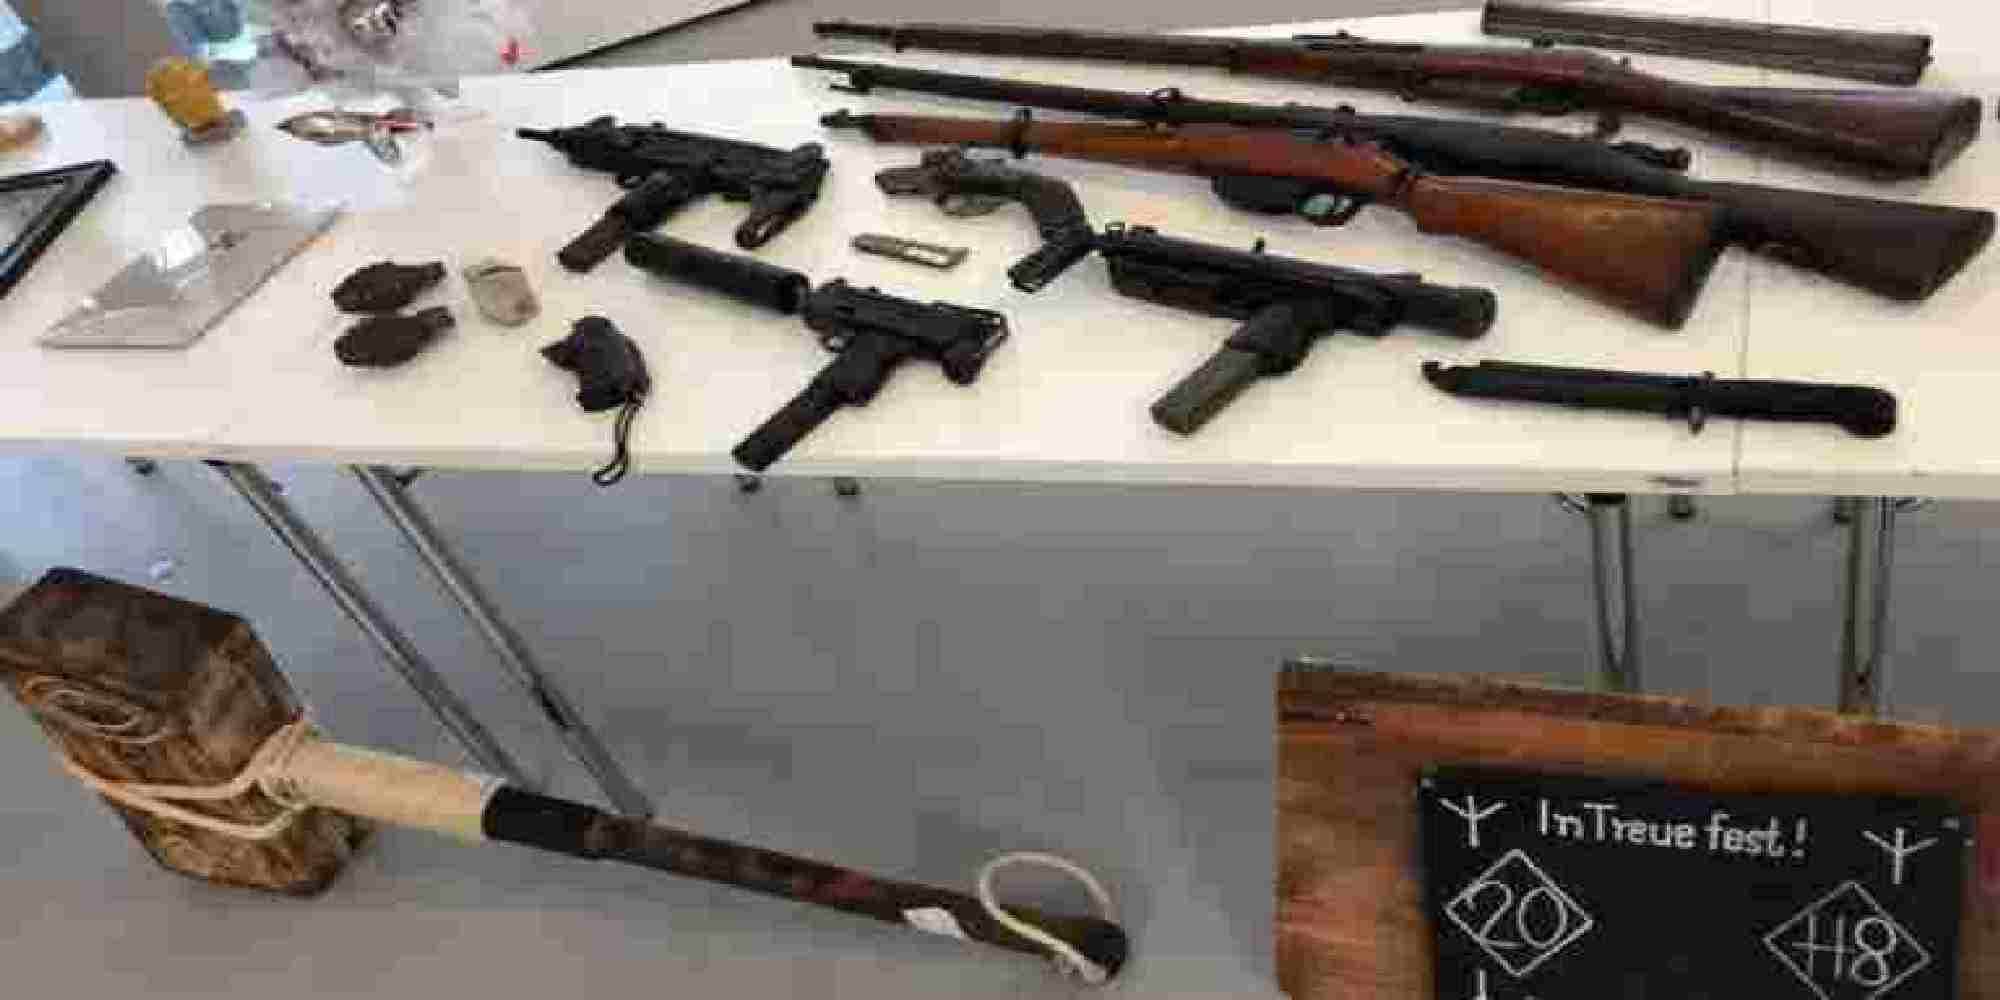 Τα όπλα που βρέθηκαν στην κατοχή του Γερμανού